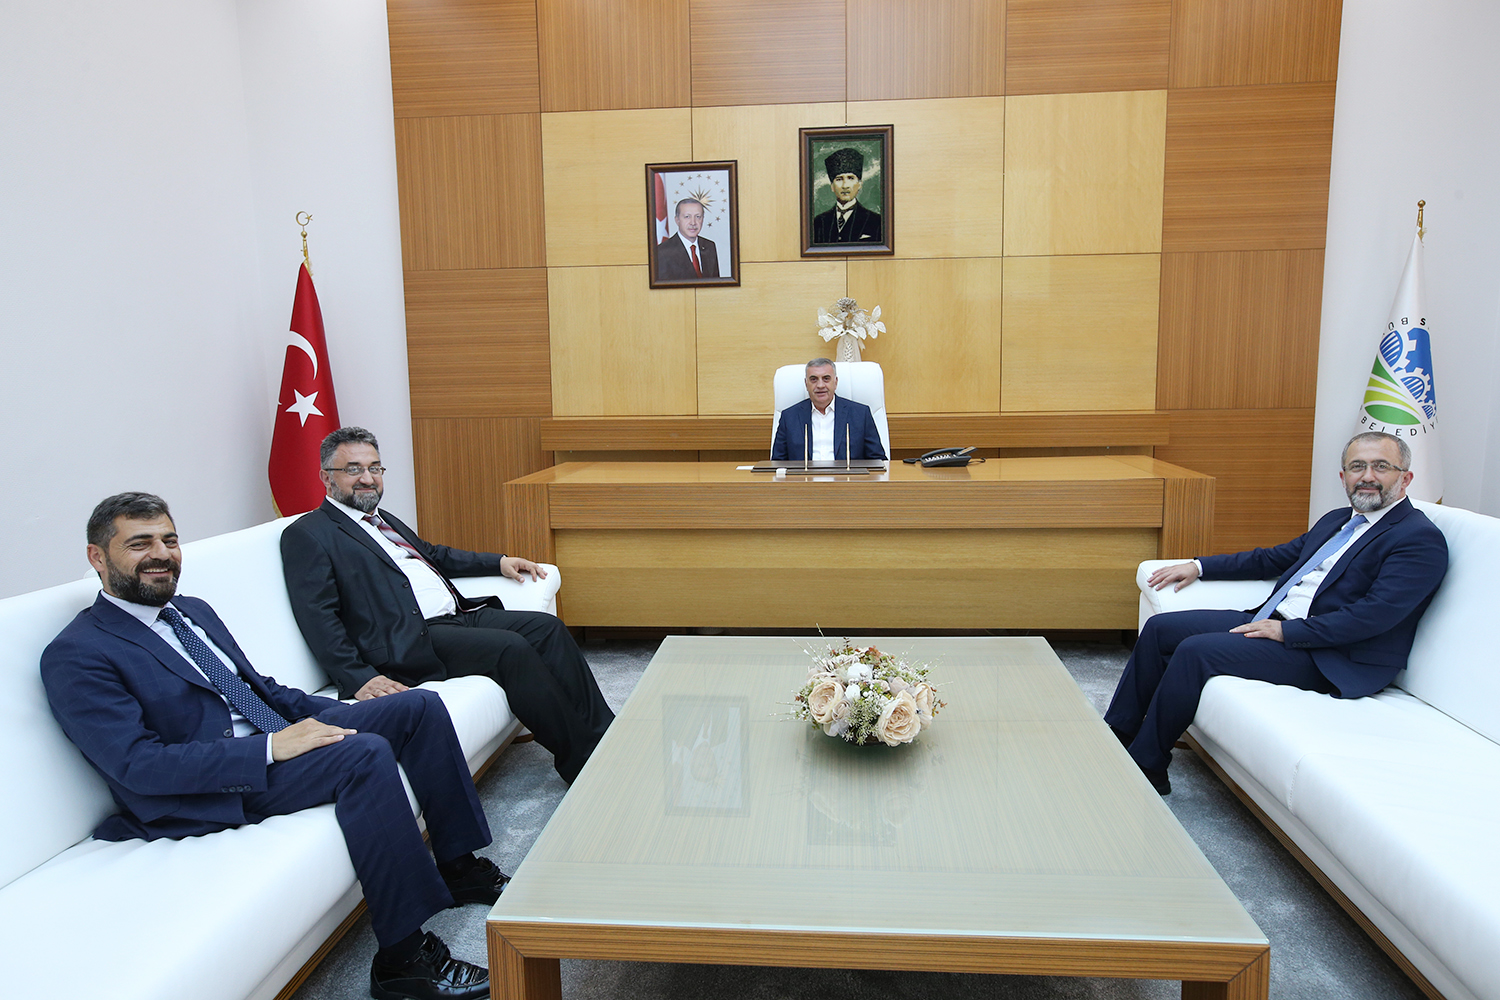 Başkan Toçoğlu, SAÜ Rektörlüğü’ne atanan Prof. Dr. Fatih Savaşan ile bir araya geldi.